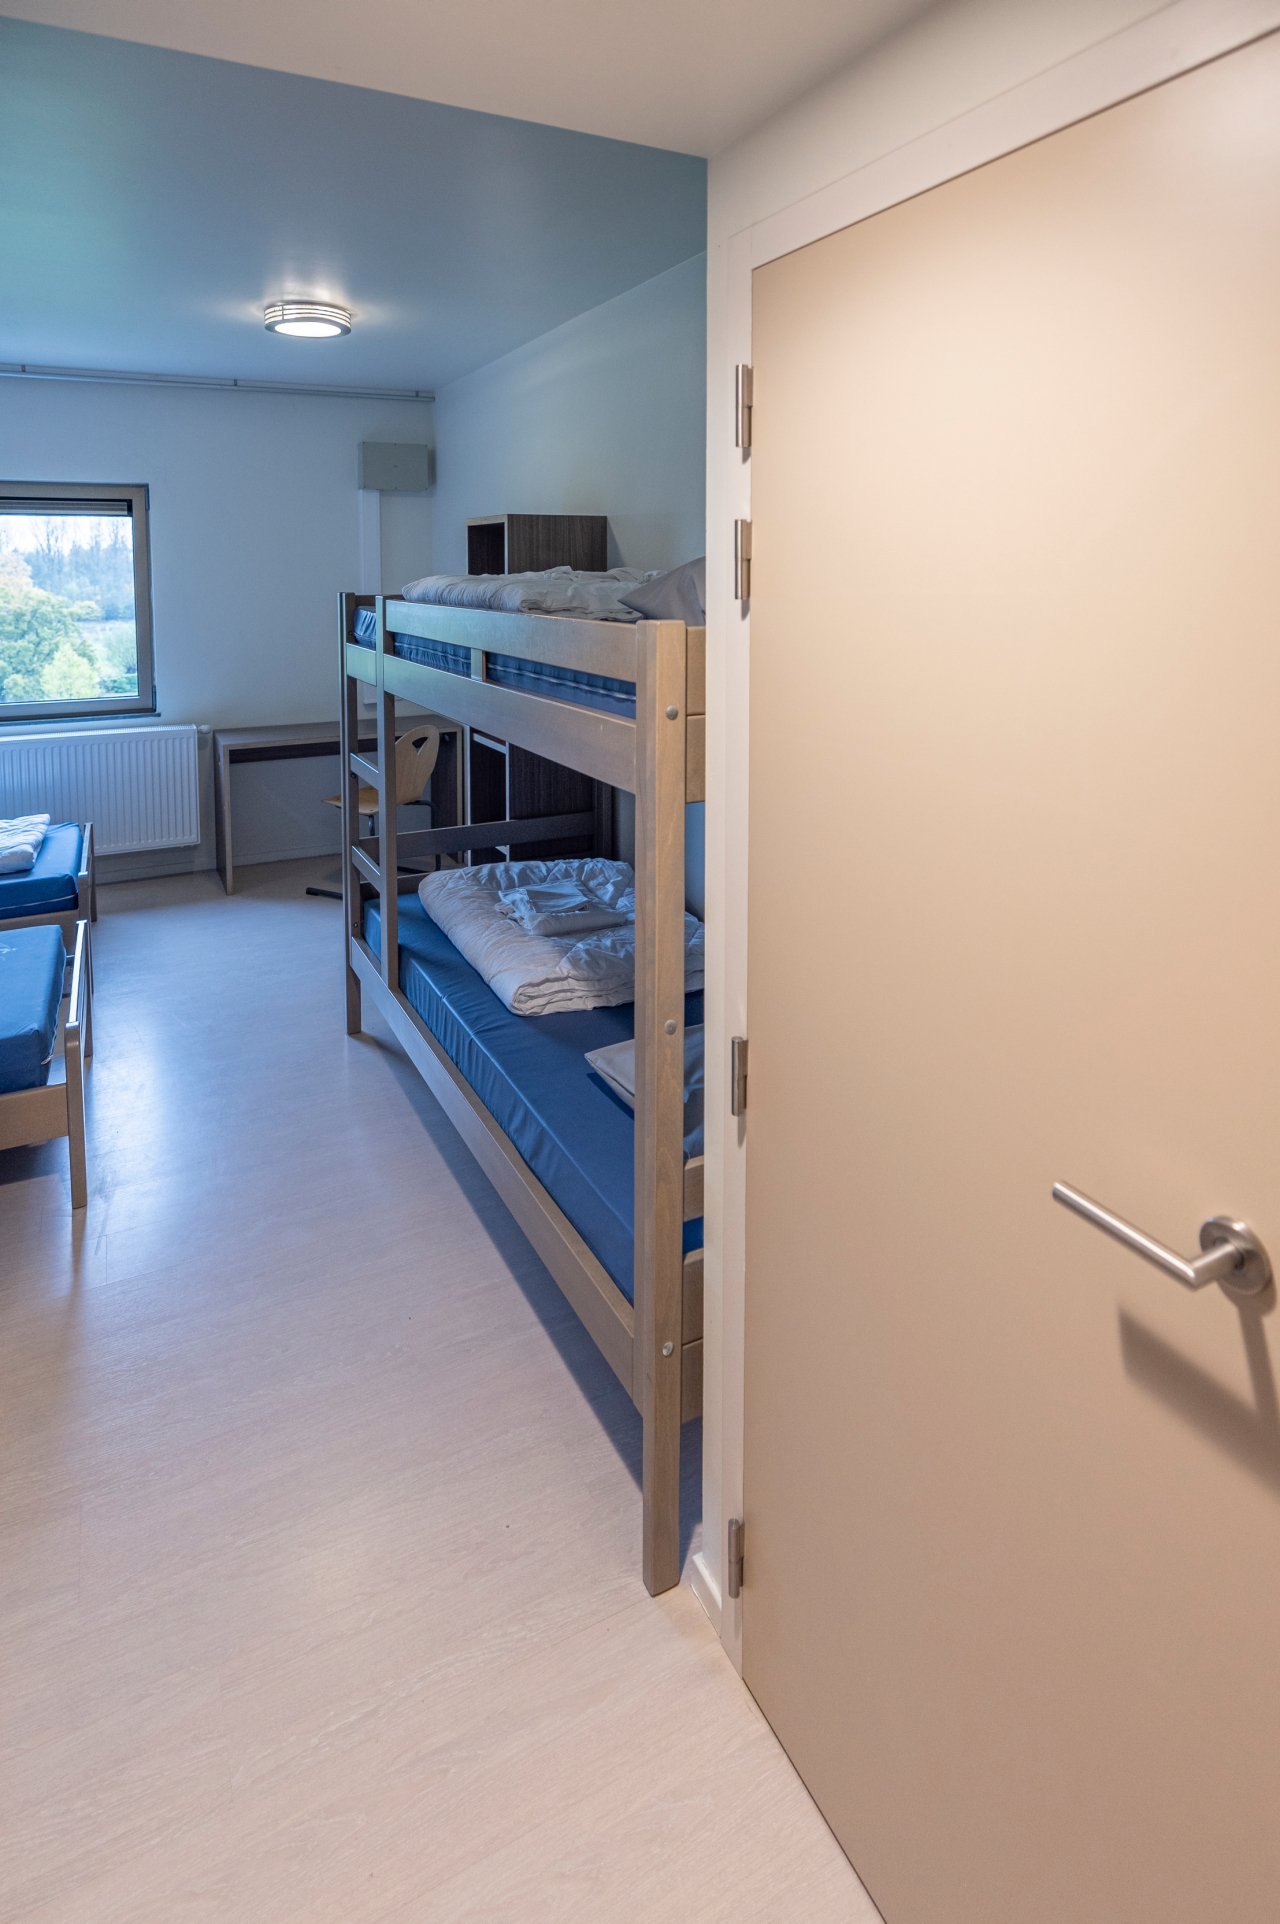 4 personenslaapkamer in het verblijfscentrum puyenbroeck